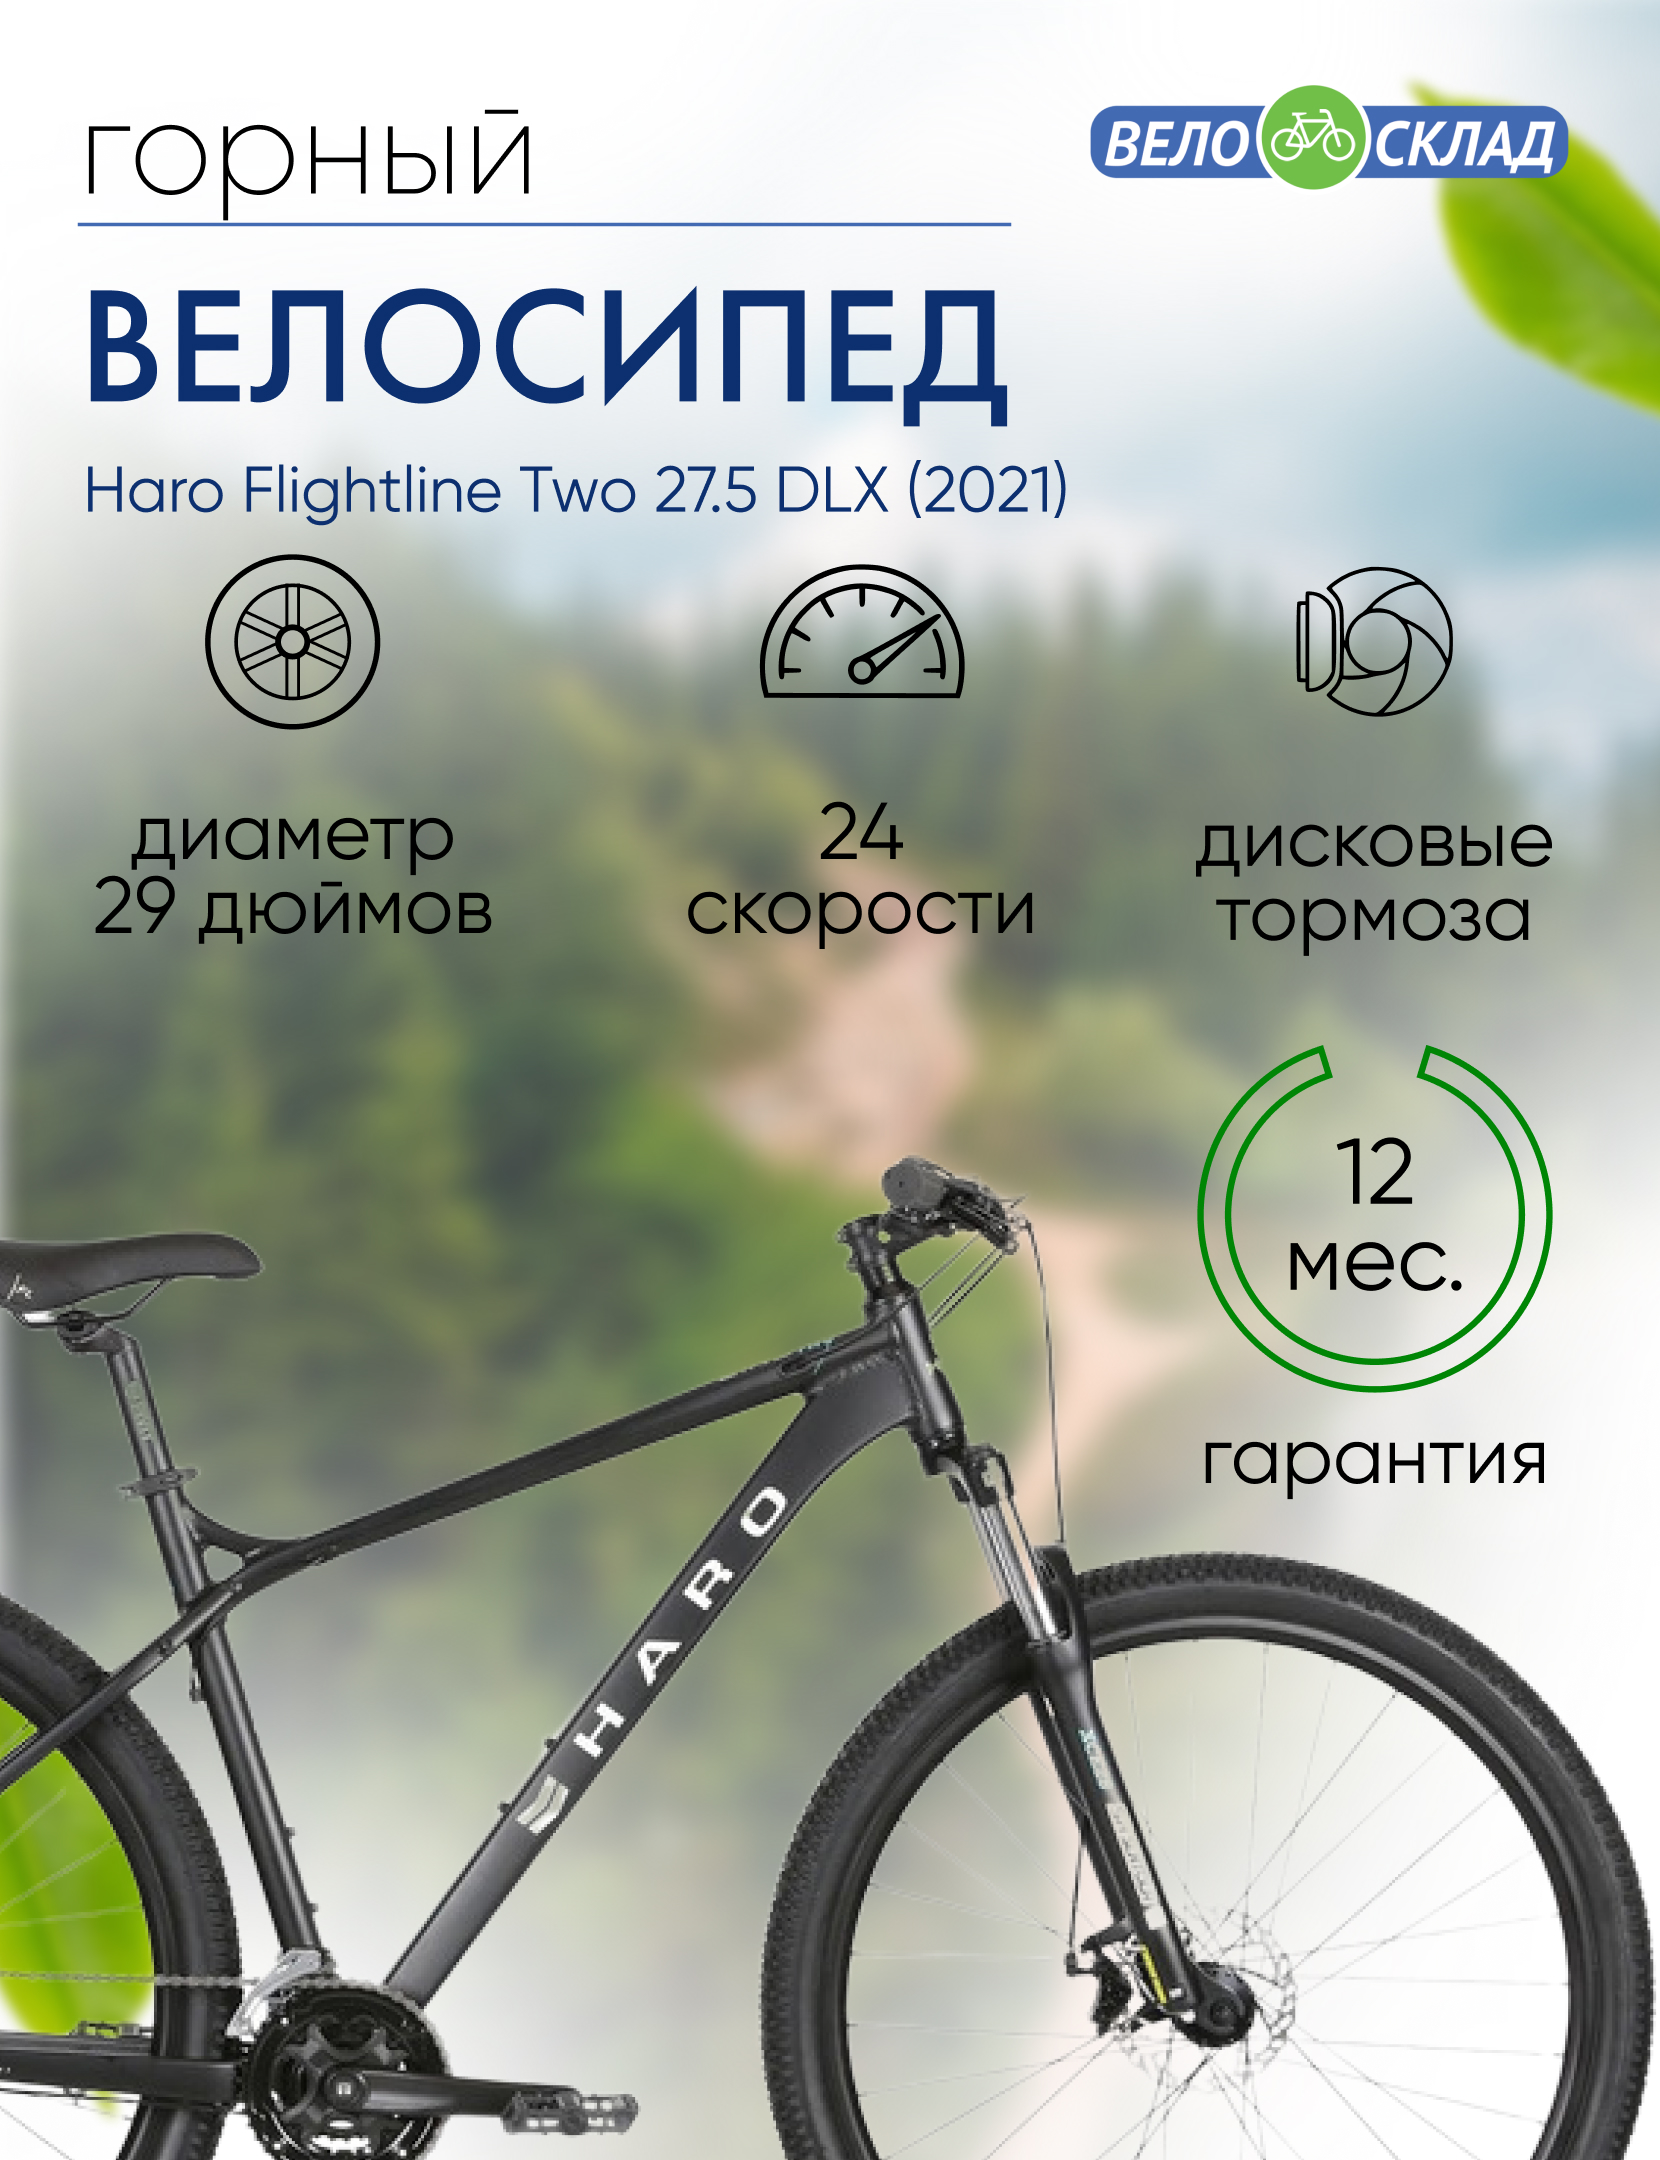 Горный велосипед Haro Flightline Two 27.5 DLX, год 2021, цвет Черный, ростовка 18